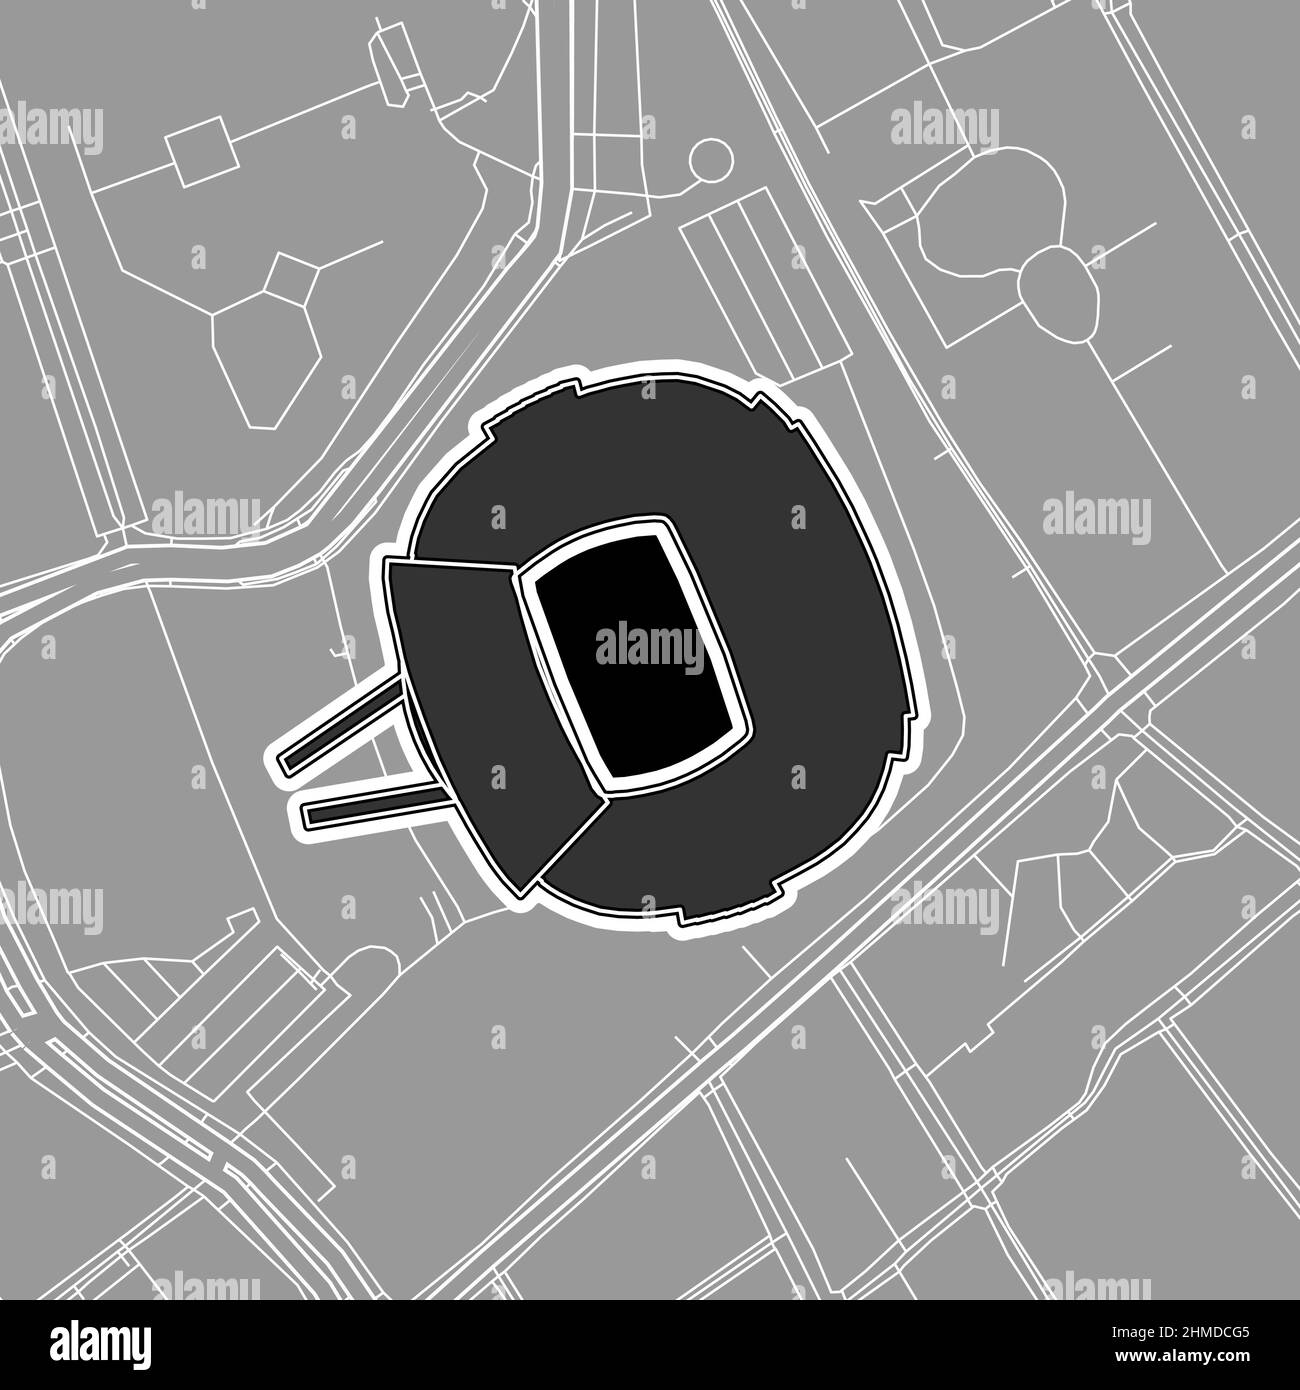 Barcellona, Stadio Baseball MLB, mappa vettoriale. La mappa dello stadio di baseball è stata disegnata con aree bianche e linee per le strade principali, le strade laterali. Illustrazione Vettoriale